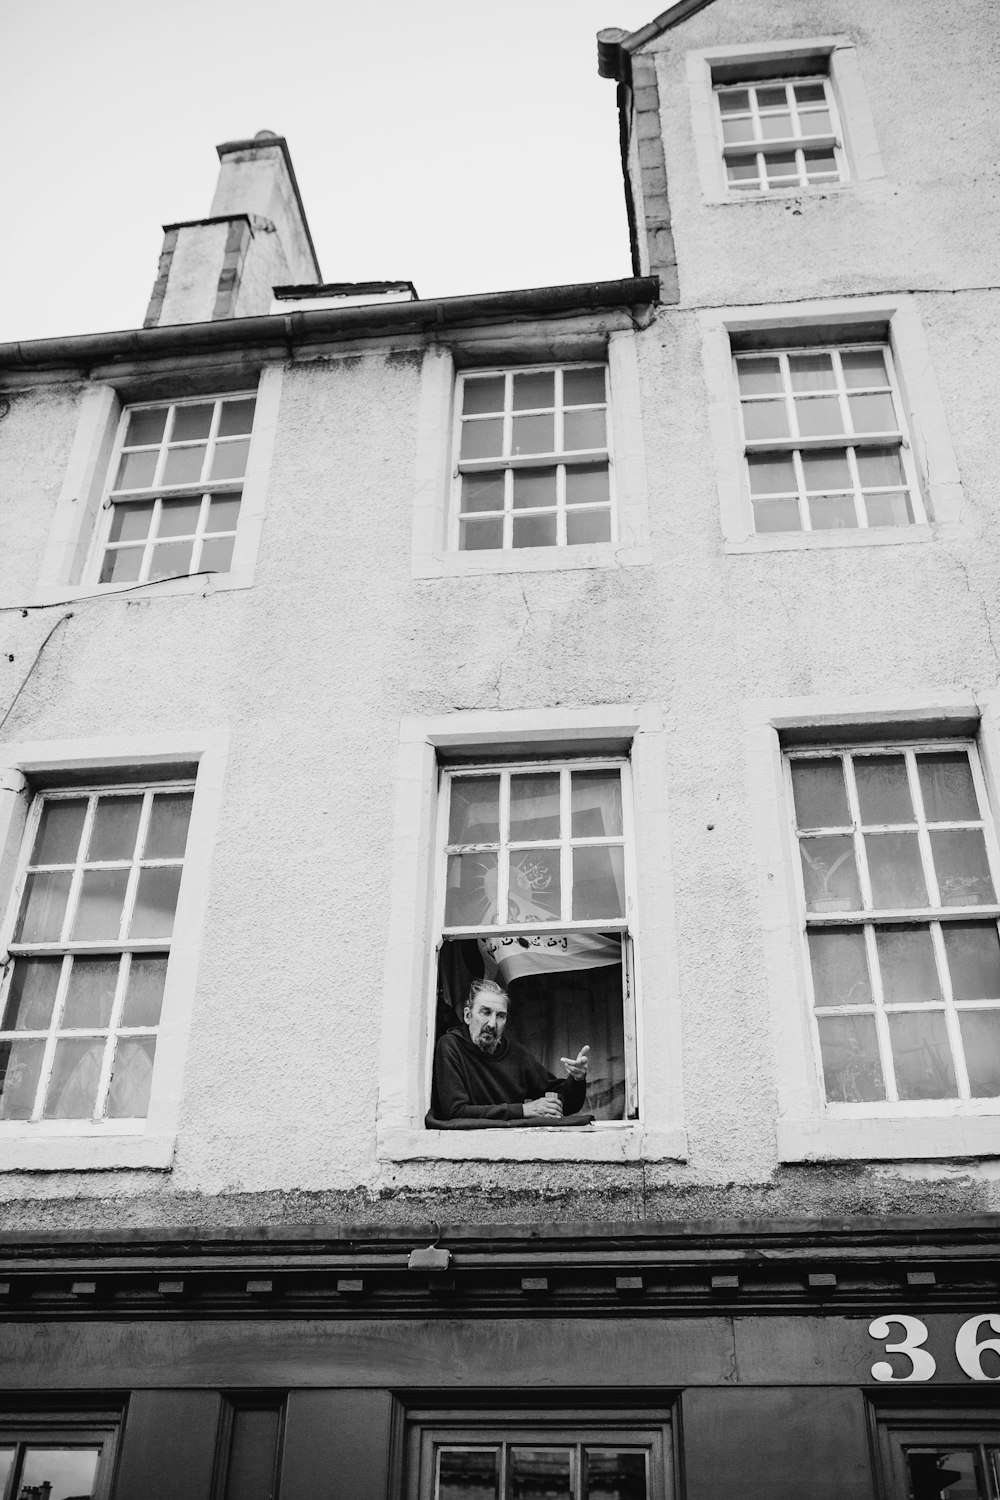 Foto in scala di grigi dell'uomo sulla finestra